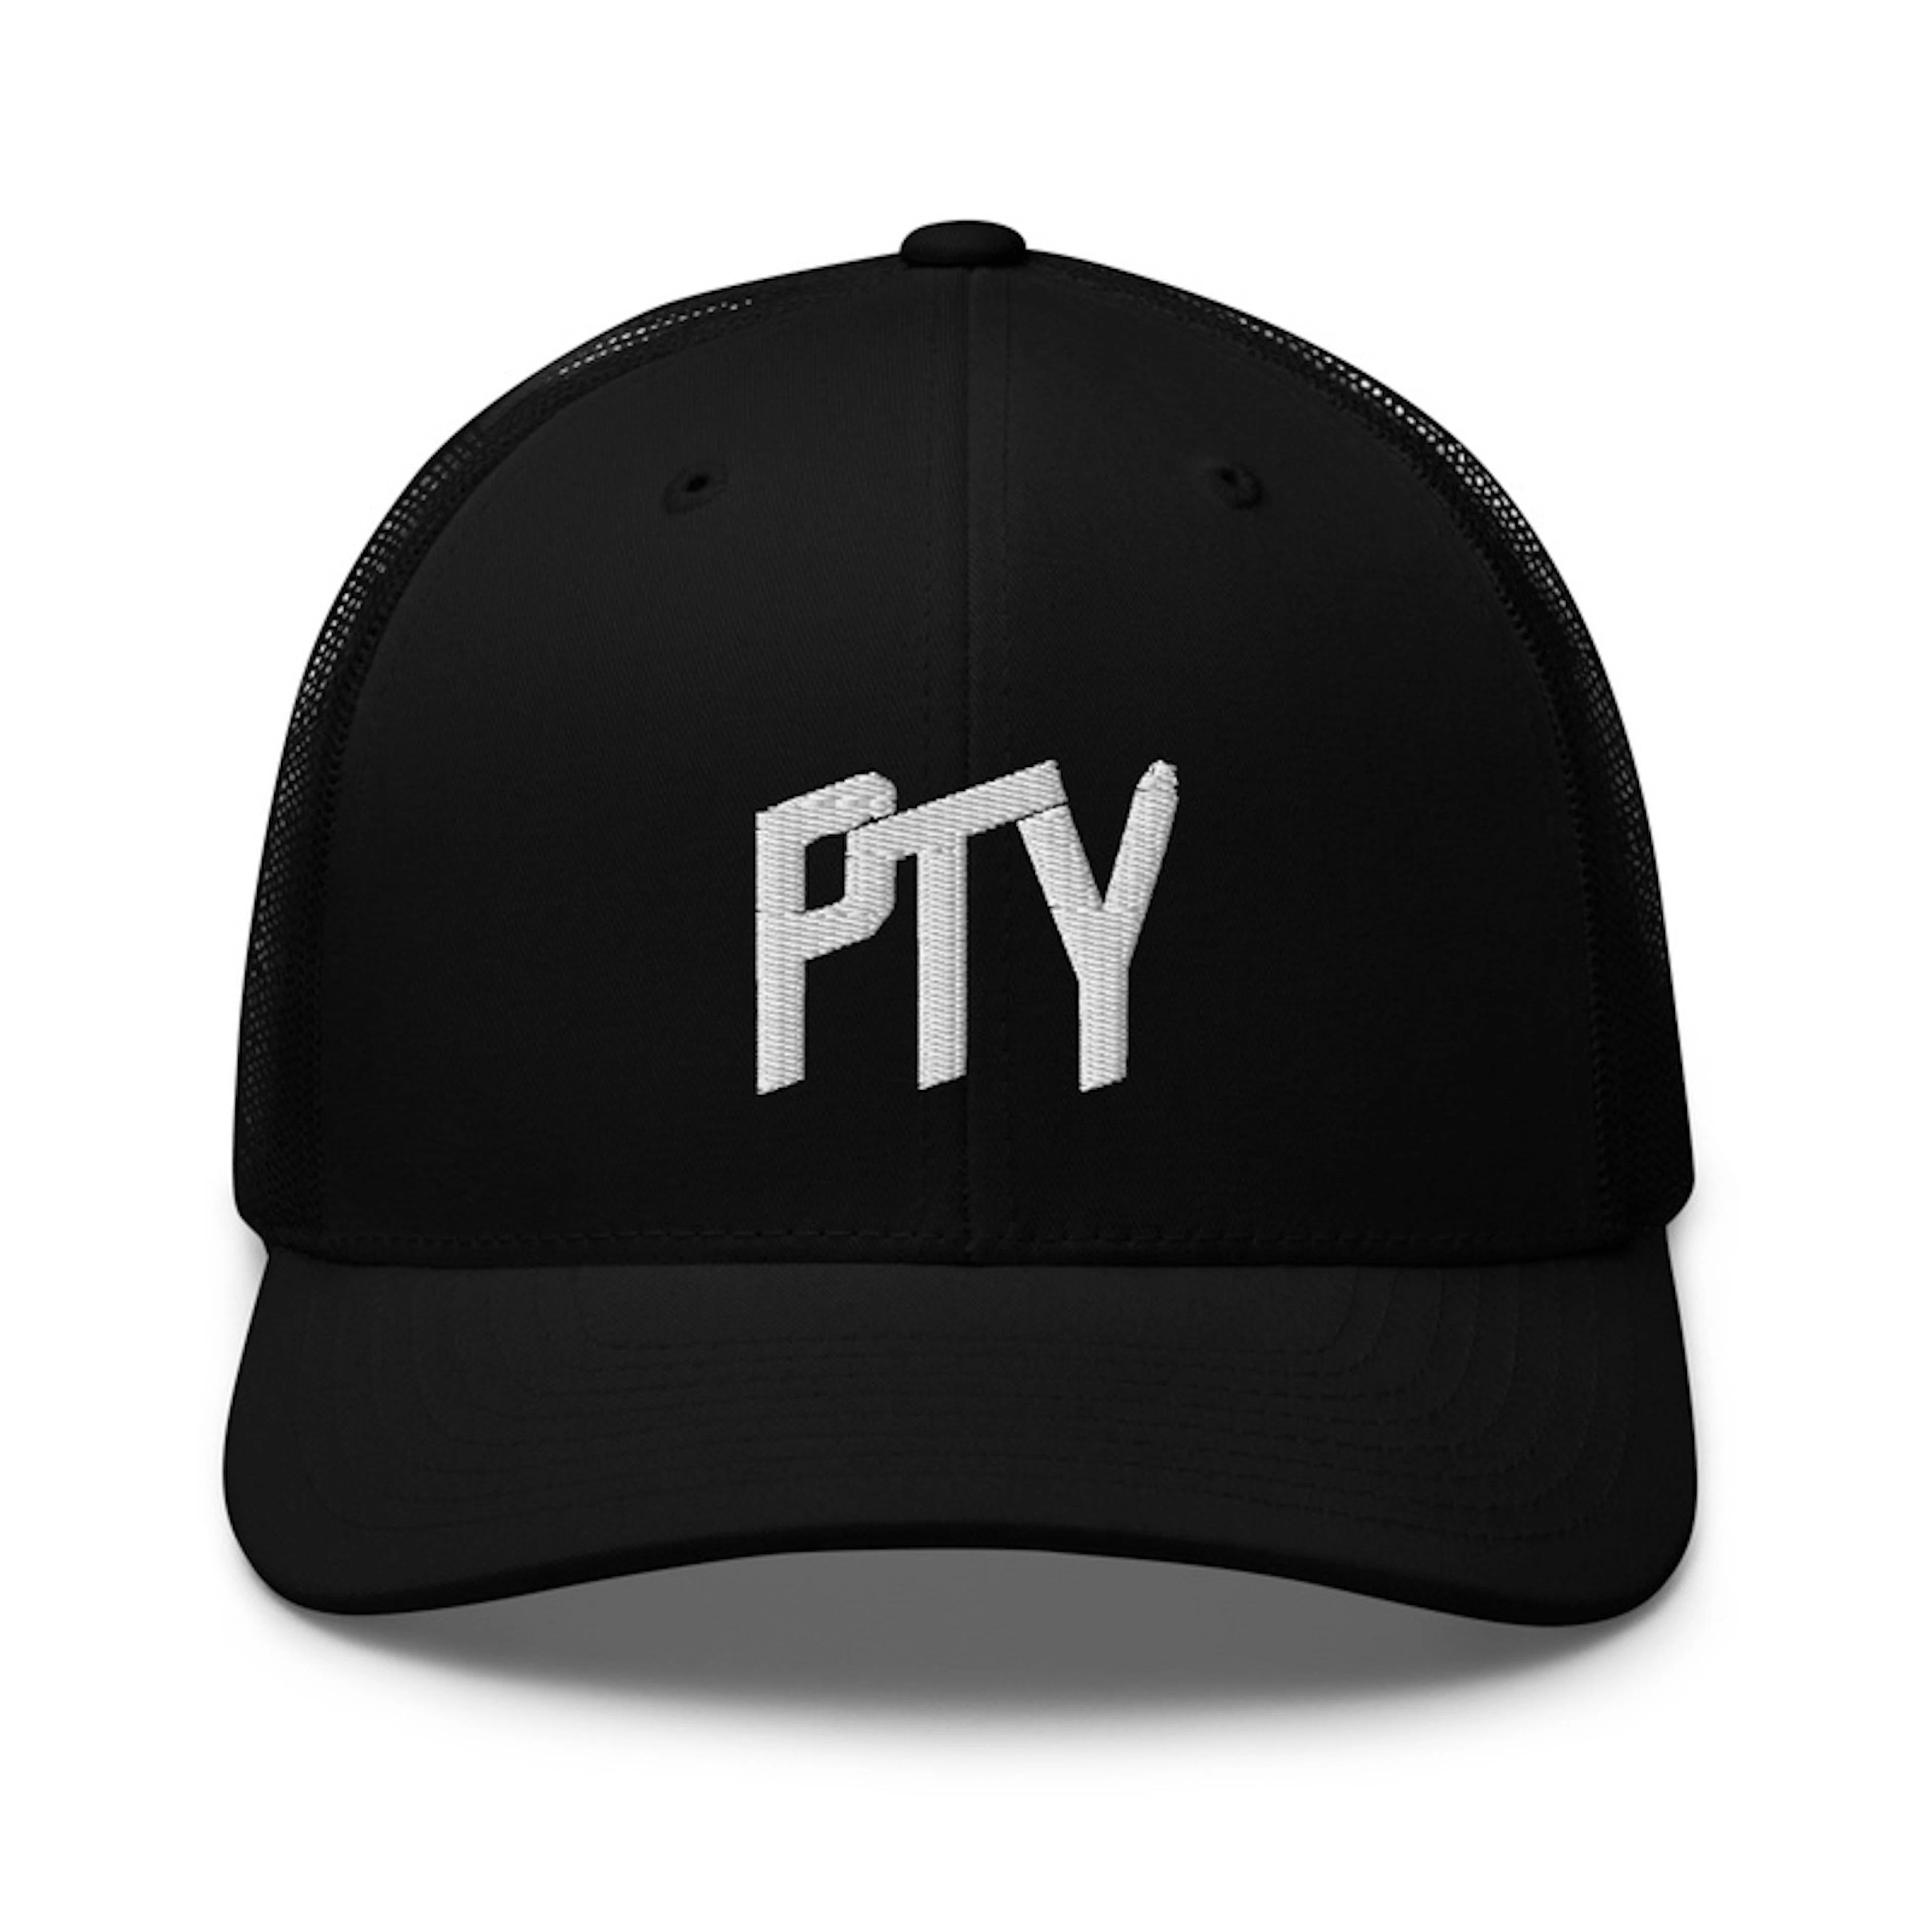 PTY hat